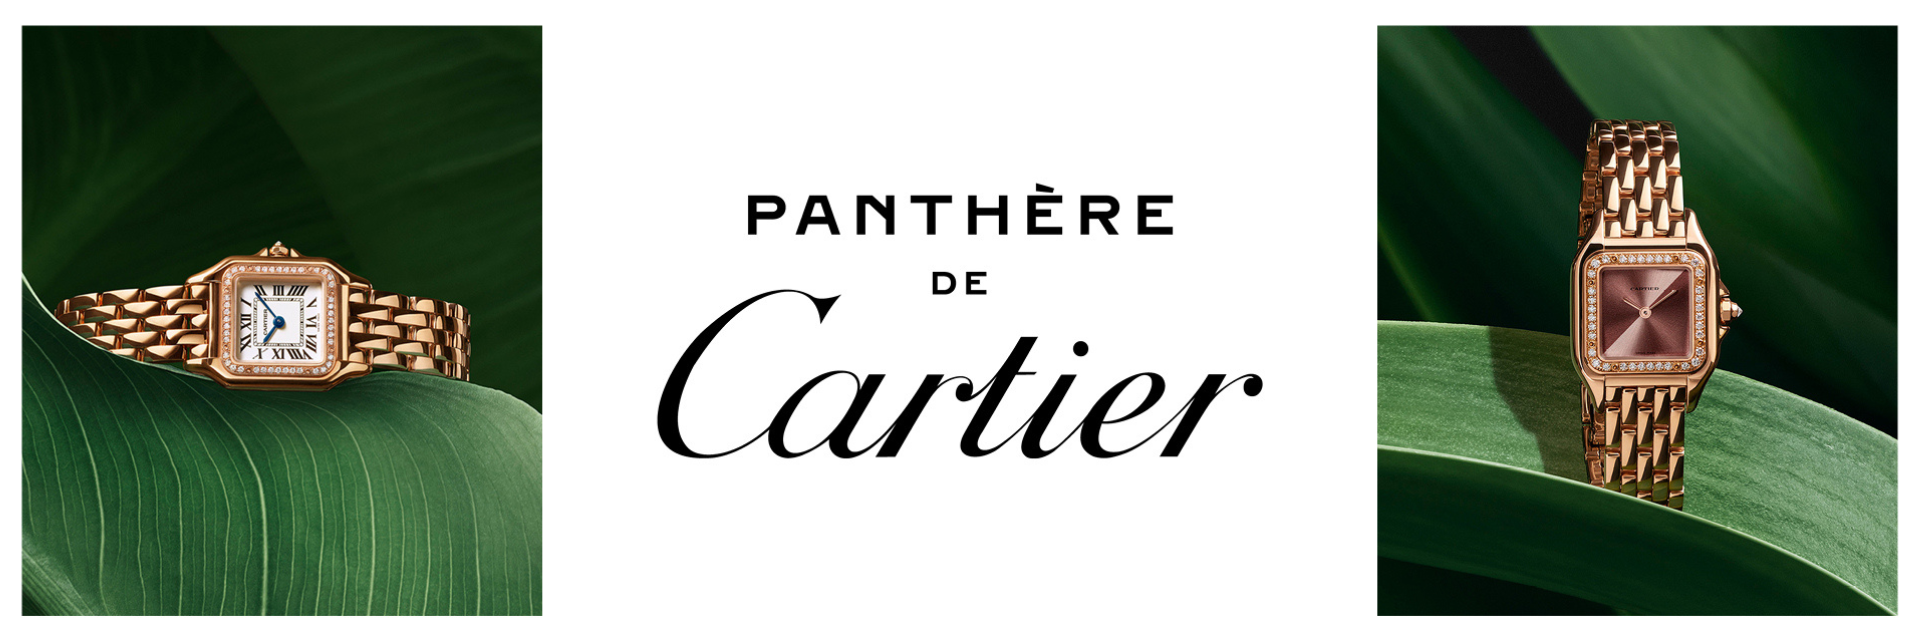 Cartier Banner